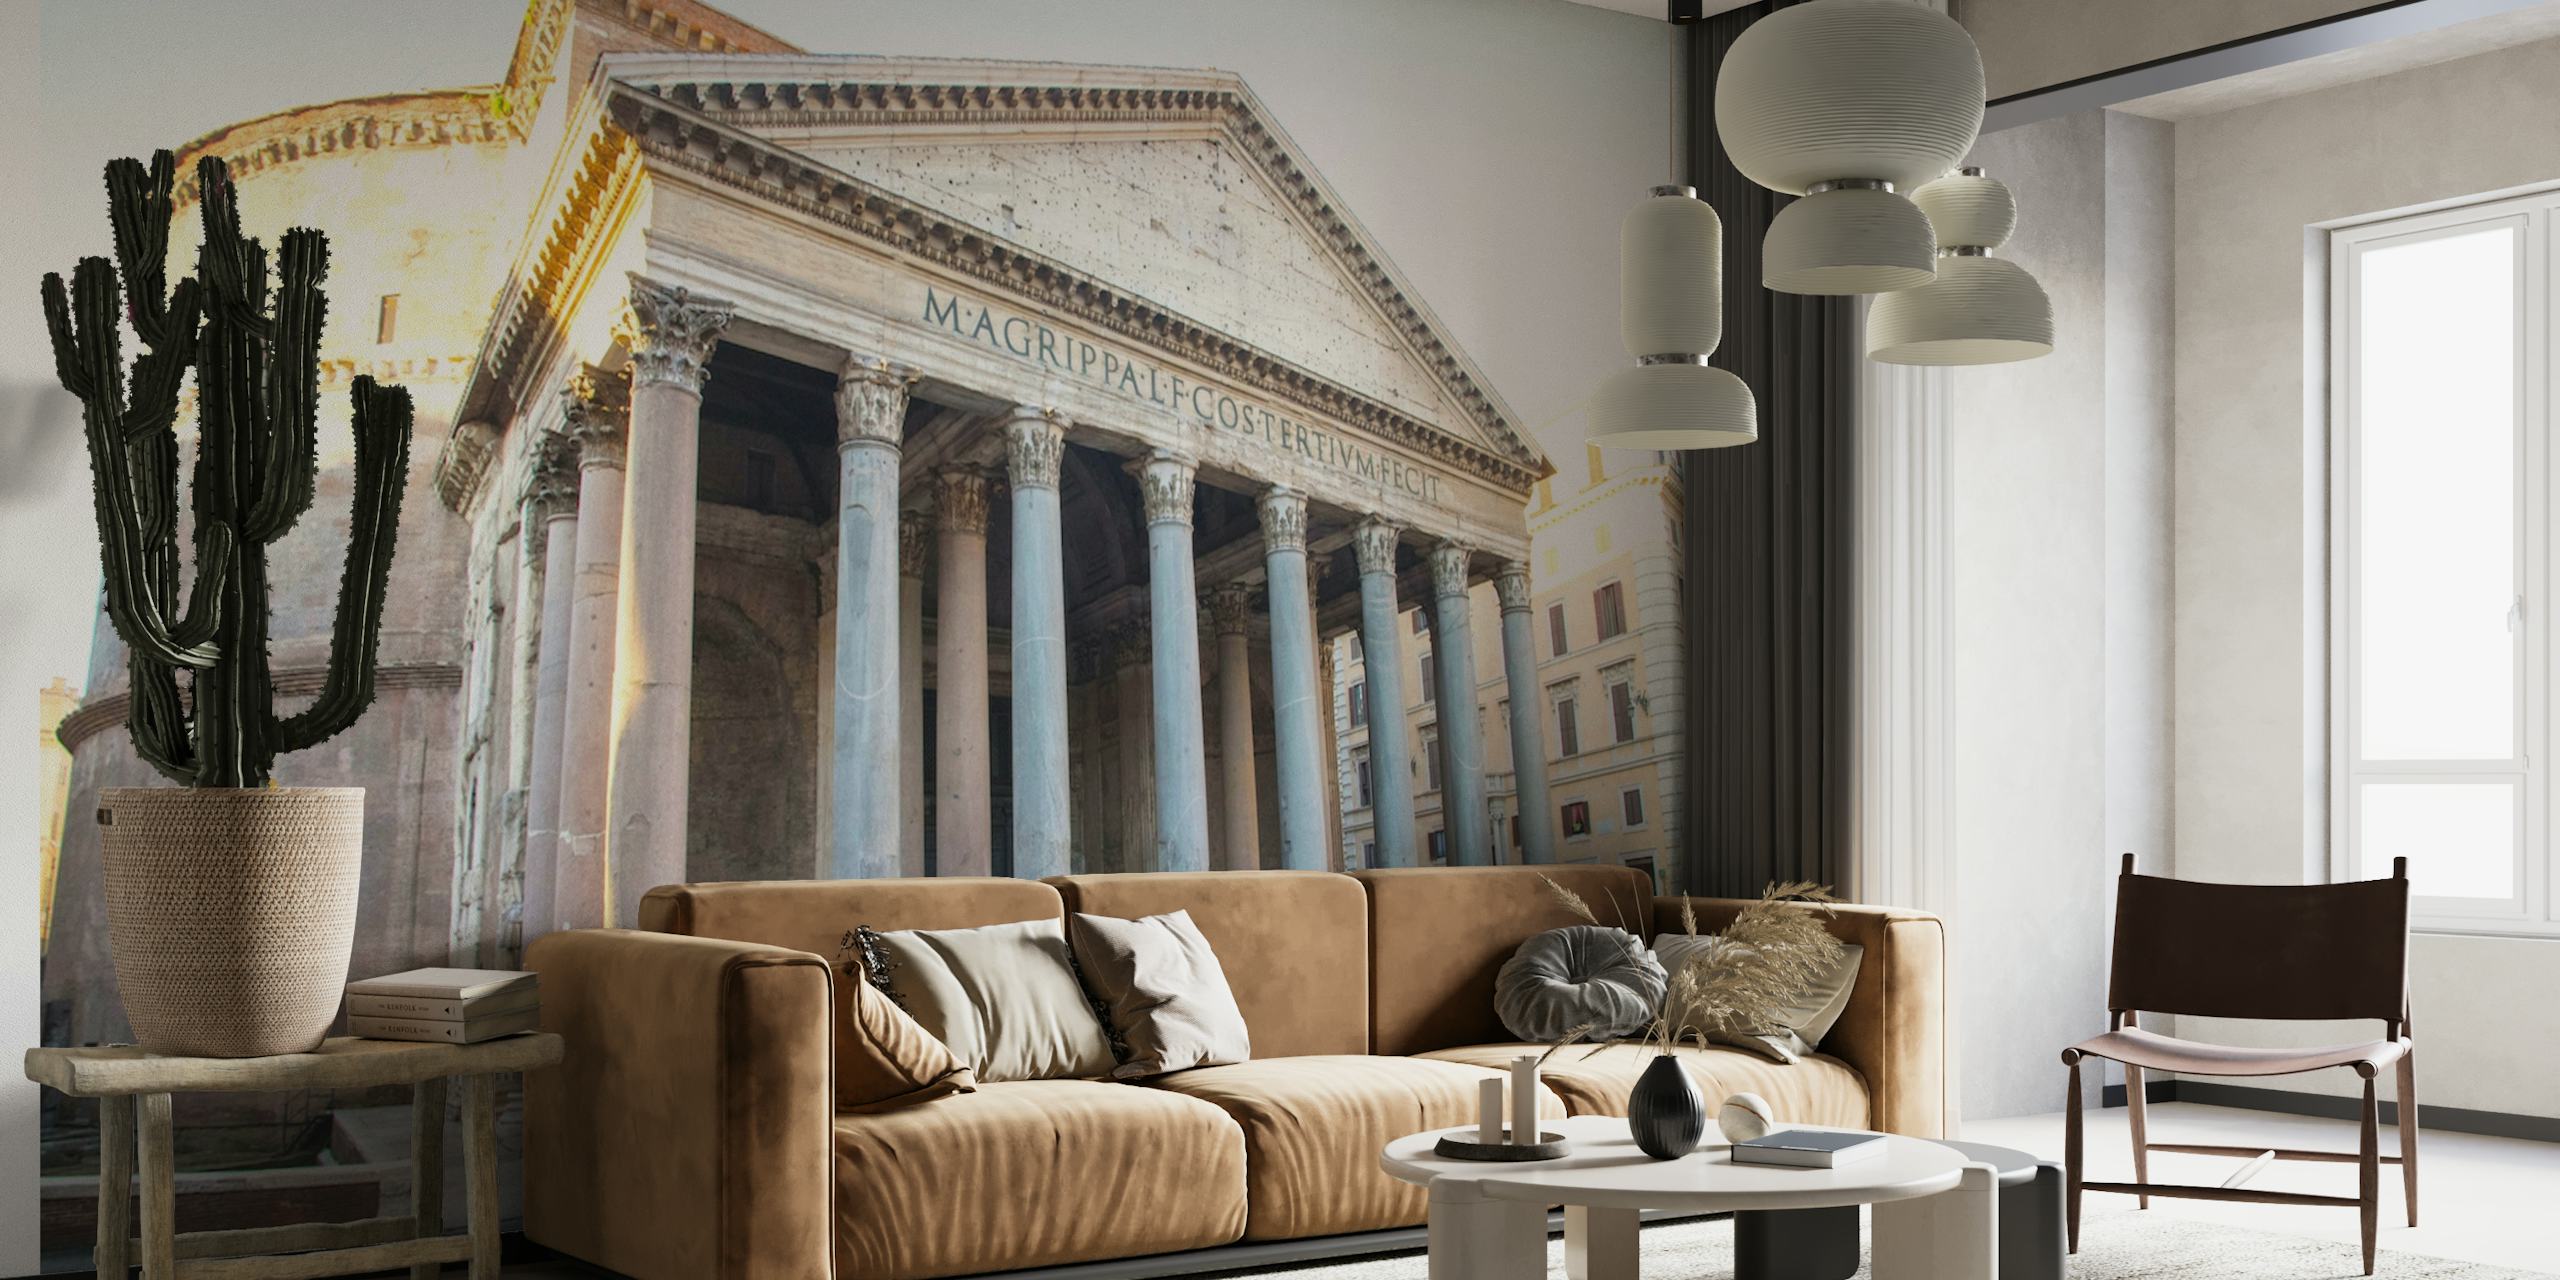 Das glorreiche Wandgemälde des Pantheons in Rom zeigt die Vorderseite des antiken Tempels mit seinen klassischen Säulen.